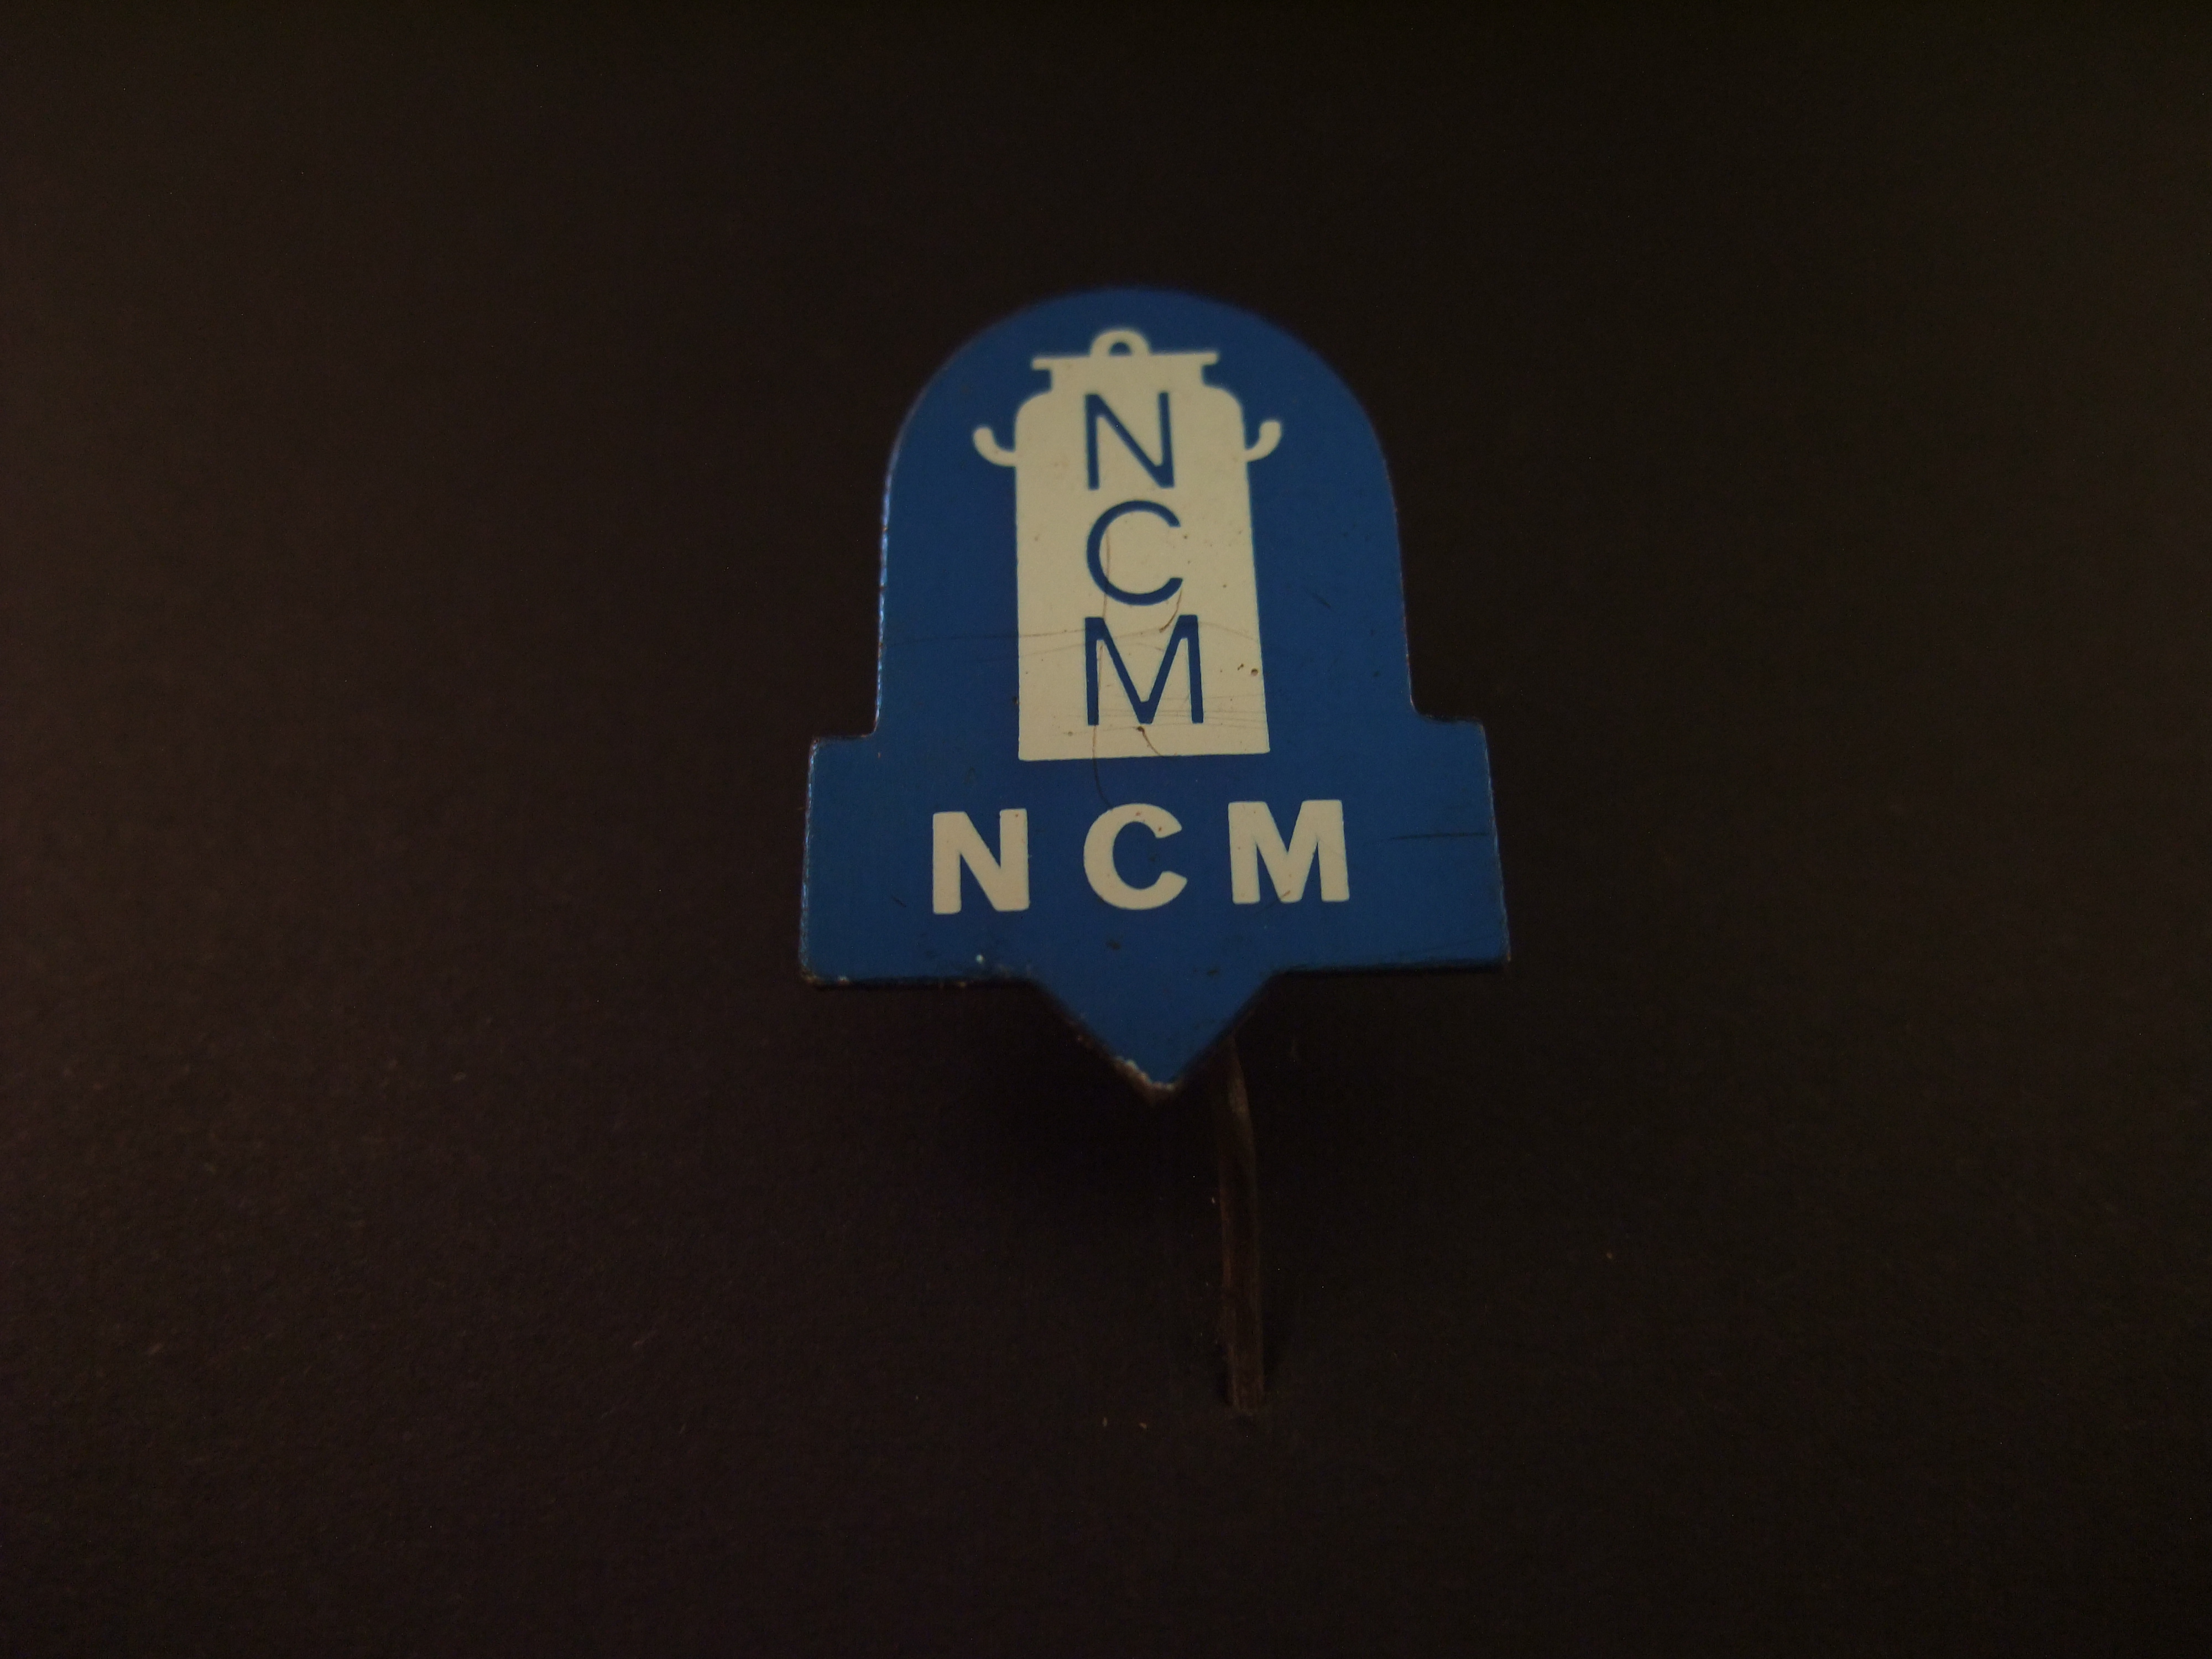 NCM (Nederlandsche Credietverzekering Maatschappij)